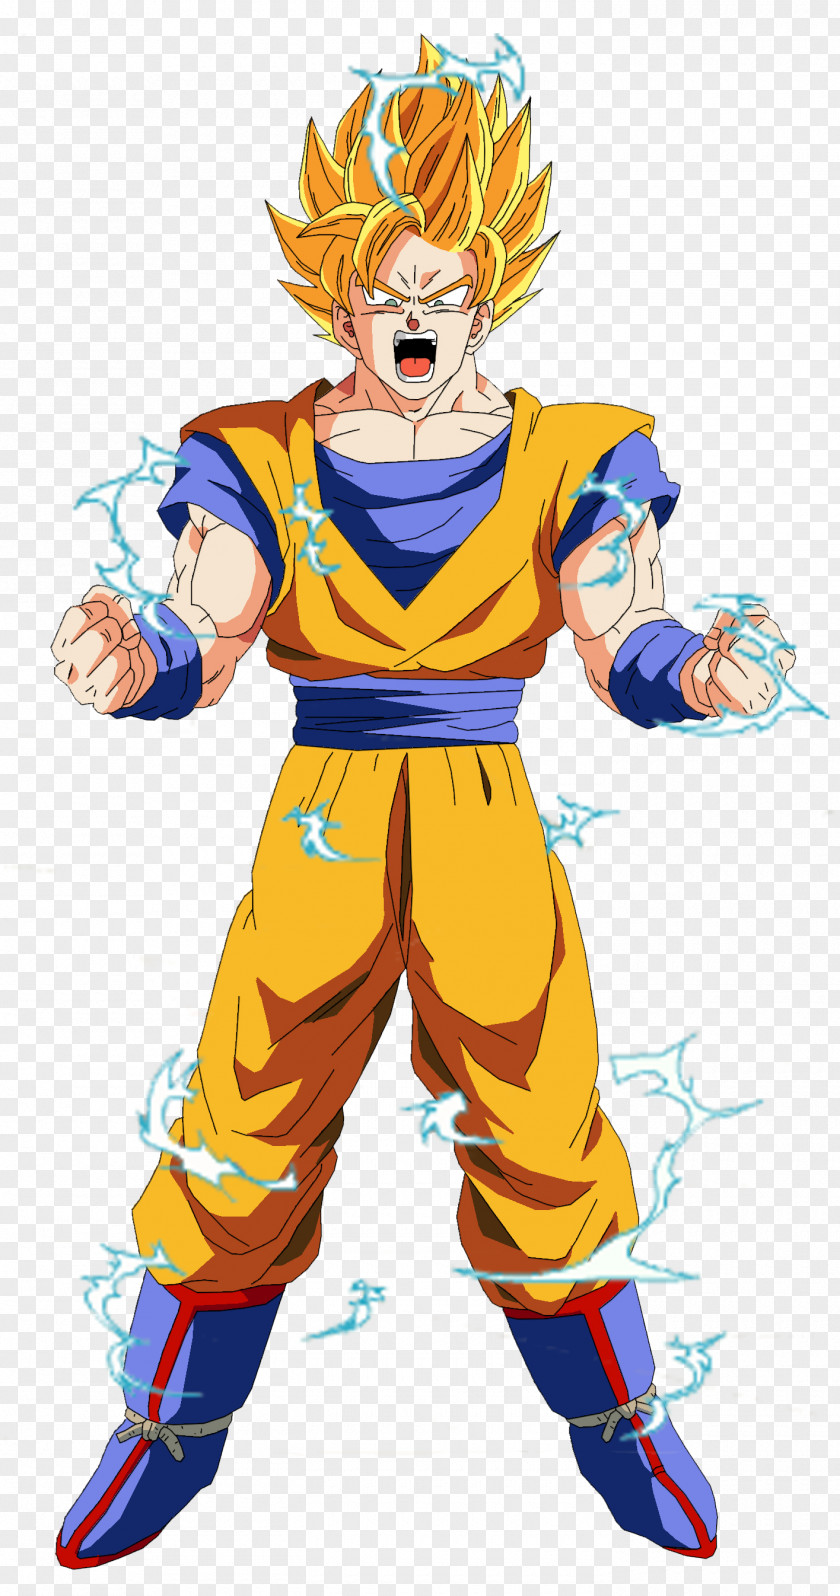 1000 Goku Vegeta Dragon Ball Z: Budokai Tenkaichi 3 Z Dokkan Battle Majin Buu PNG